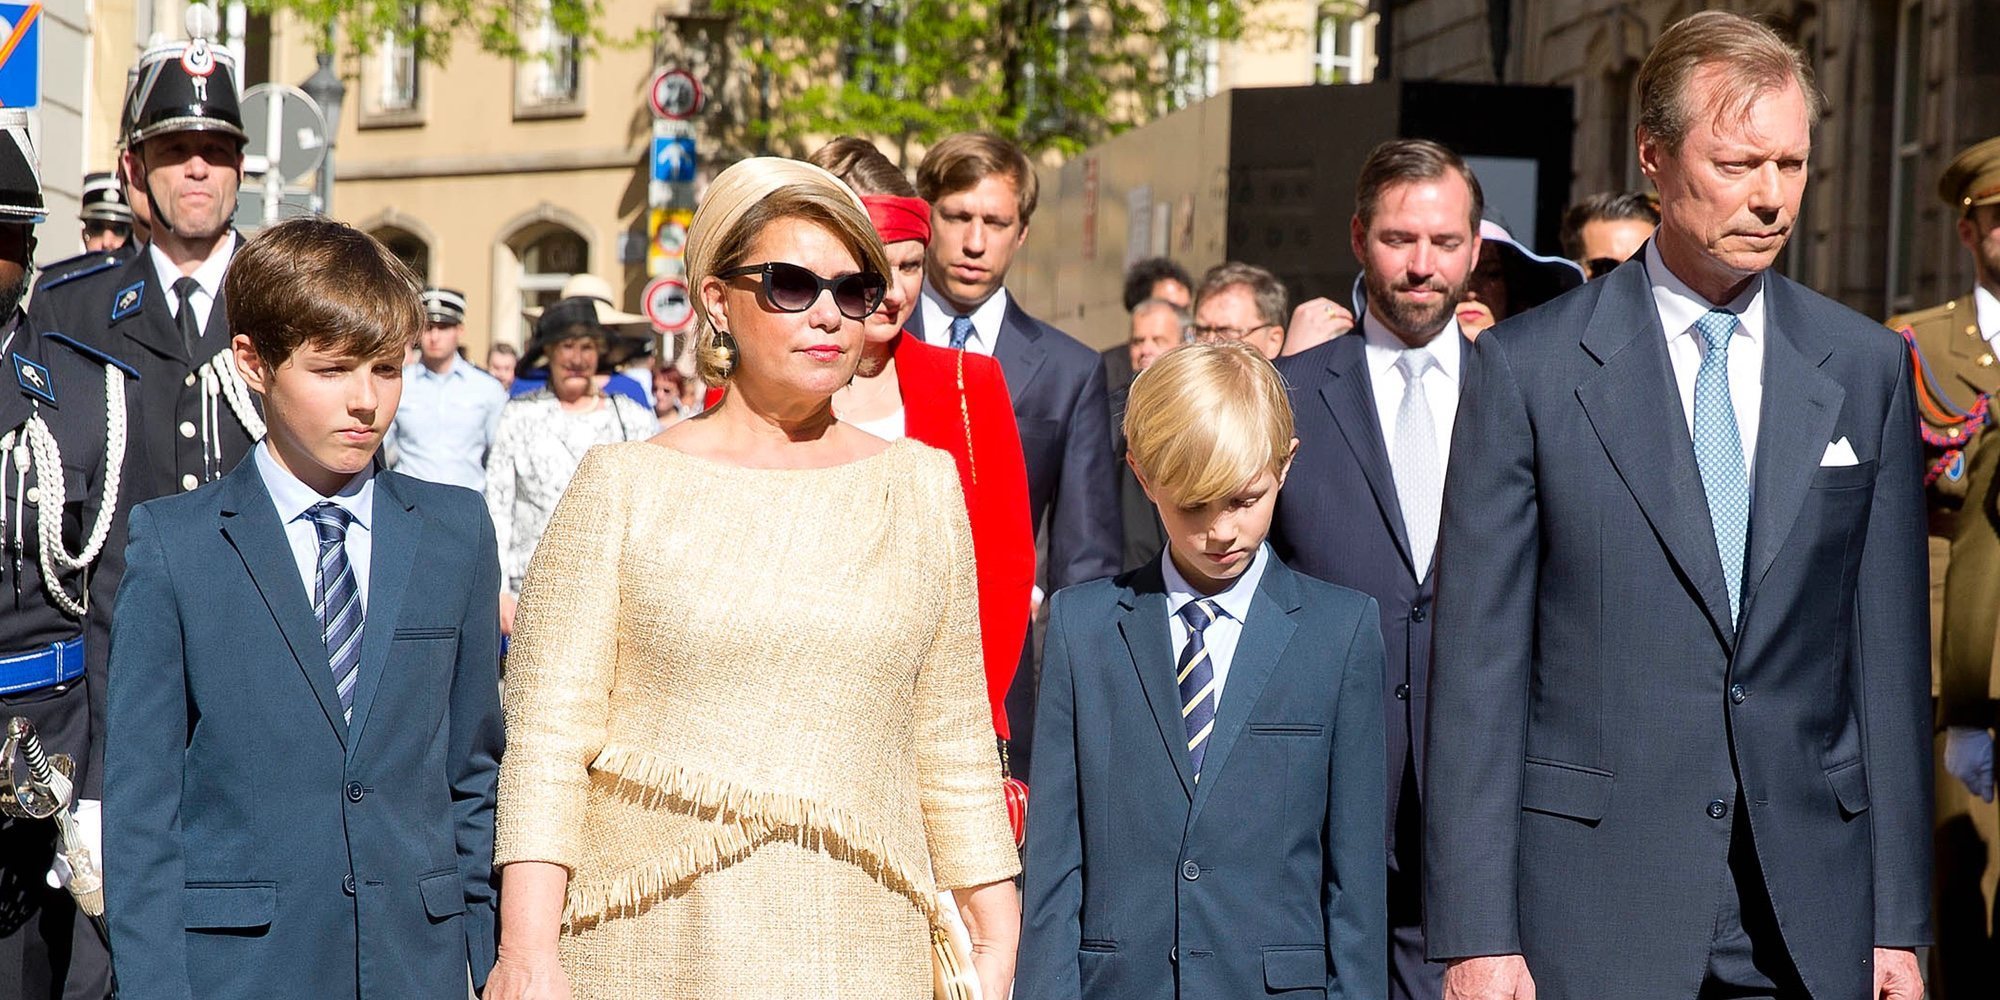 La reunión de la Familia Real de Luxemburgo: presencias inesperadas y ausencias extrañas